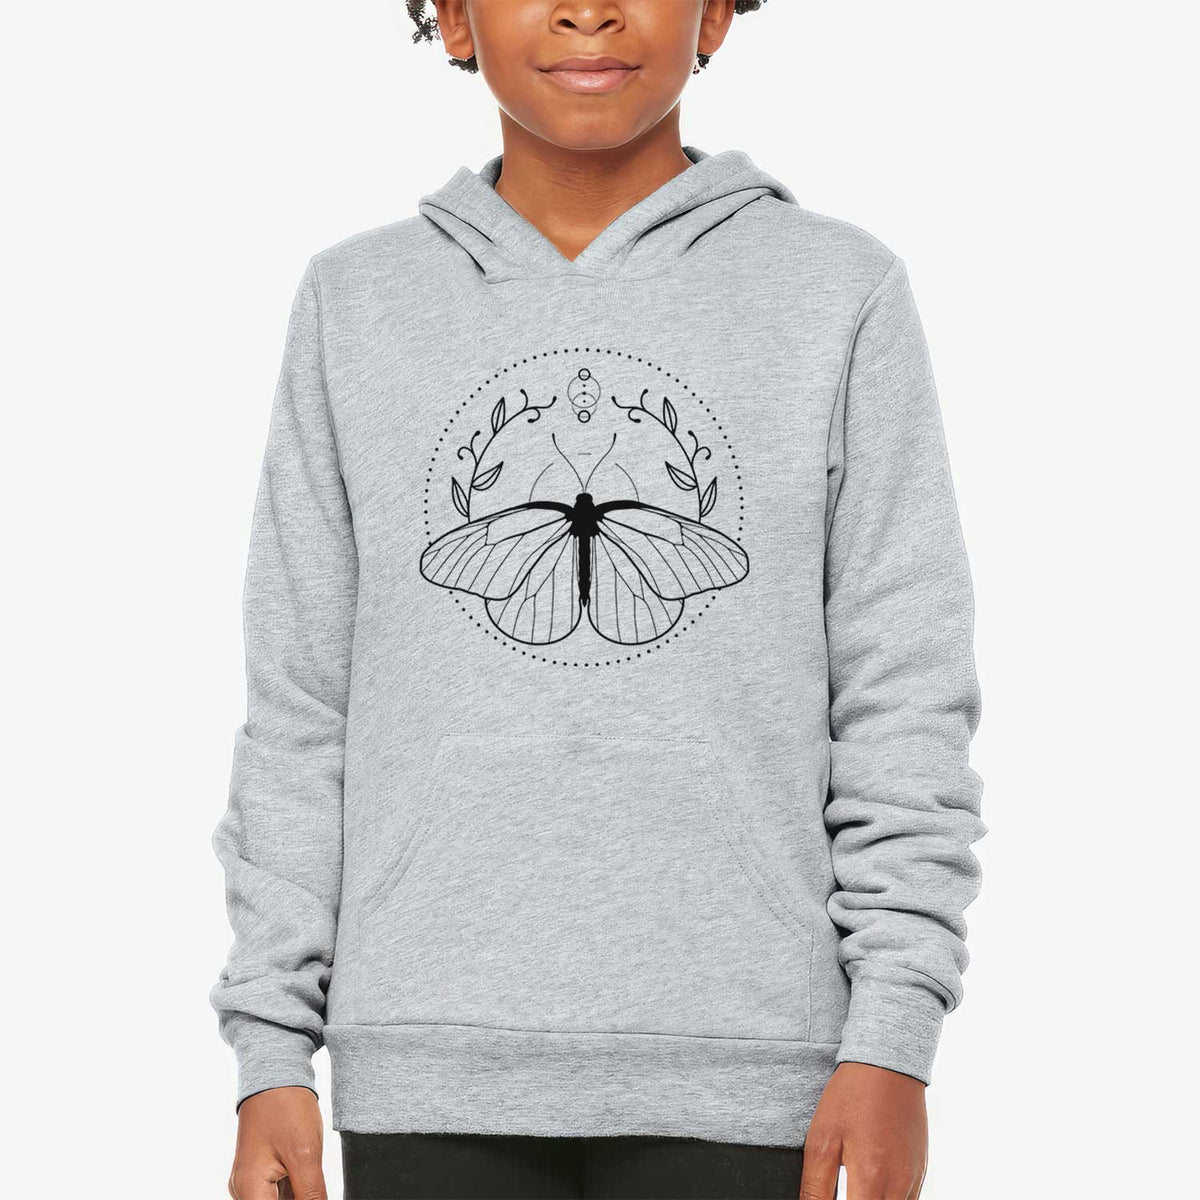 Aporia crataegi - Black Veined White Butterfly - Youth Hoodie Sweatshirt